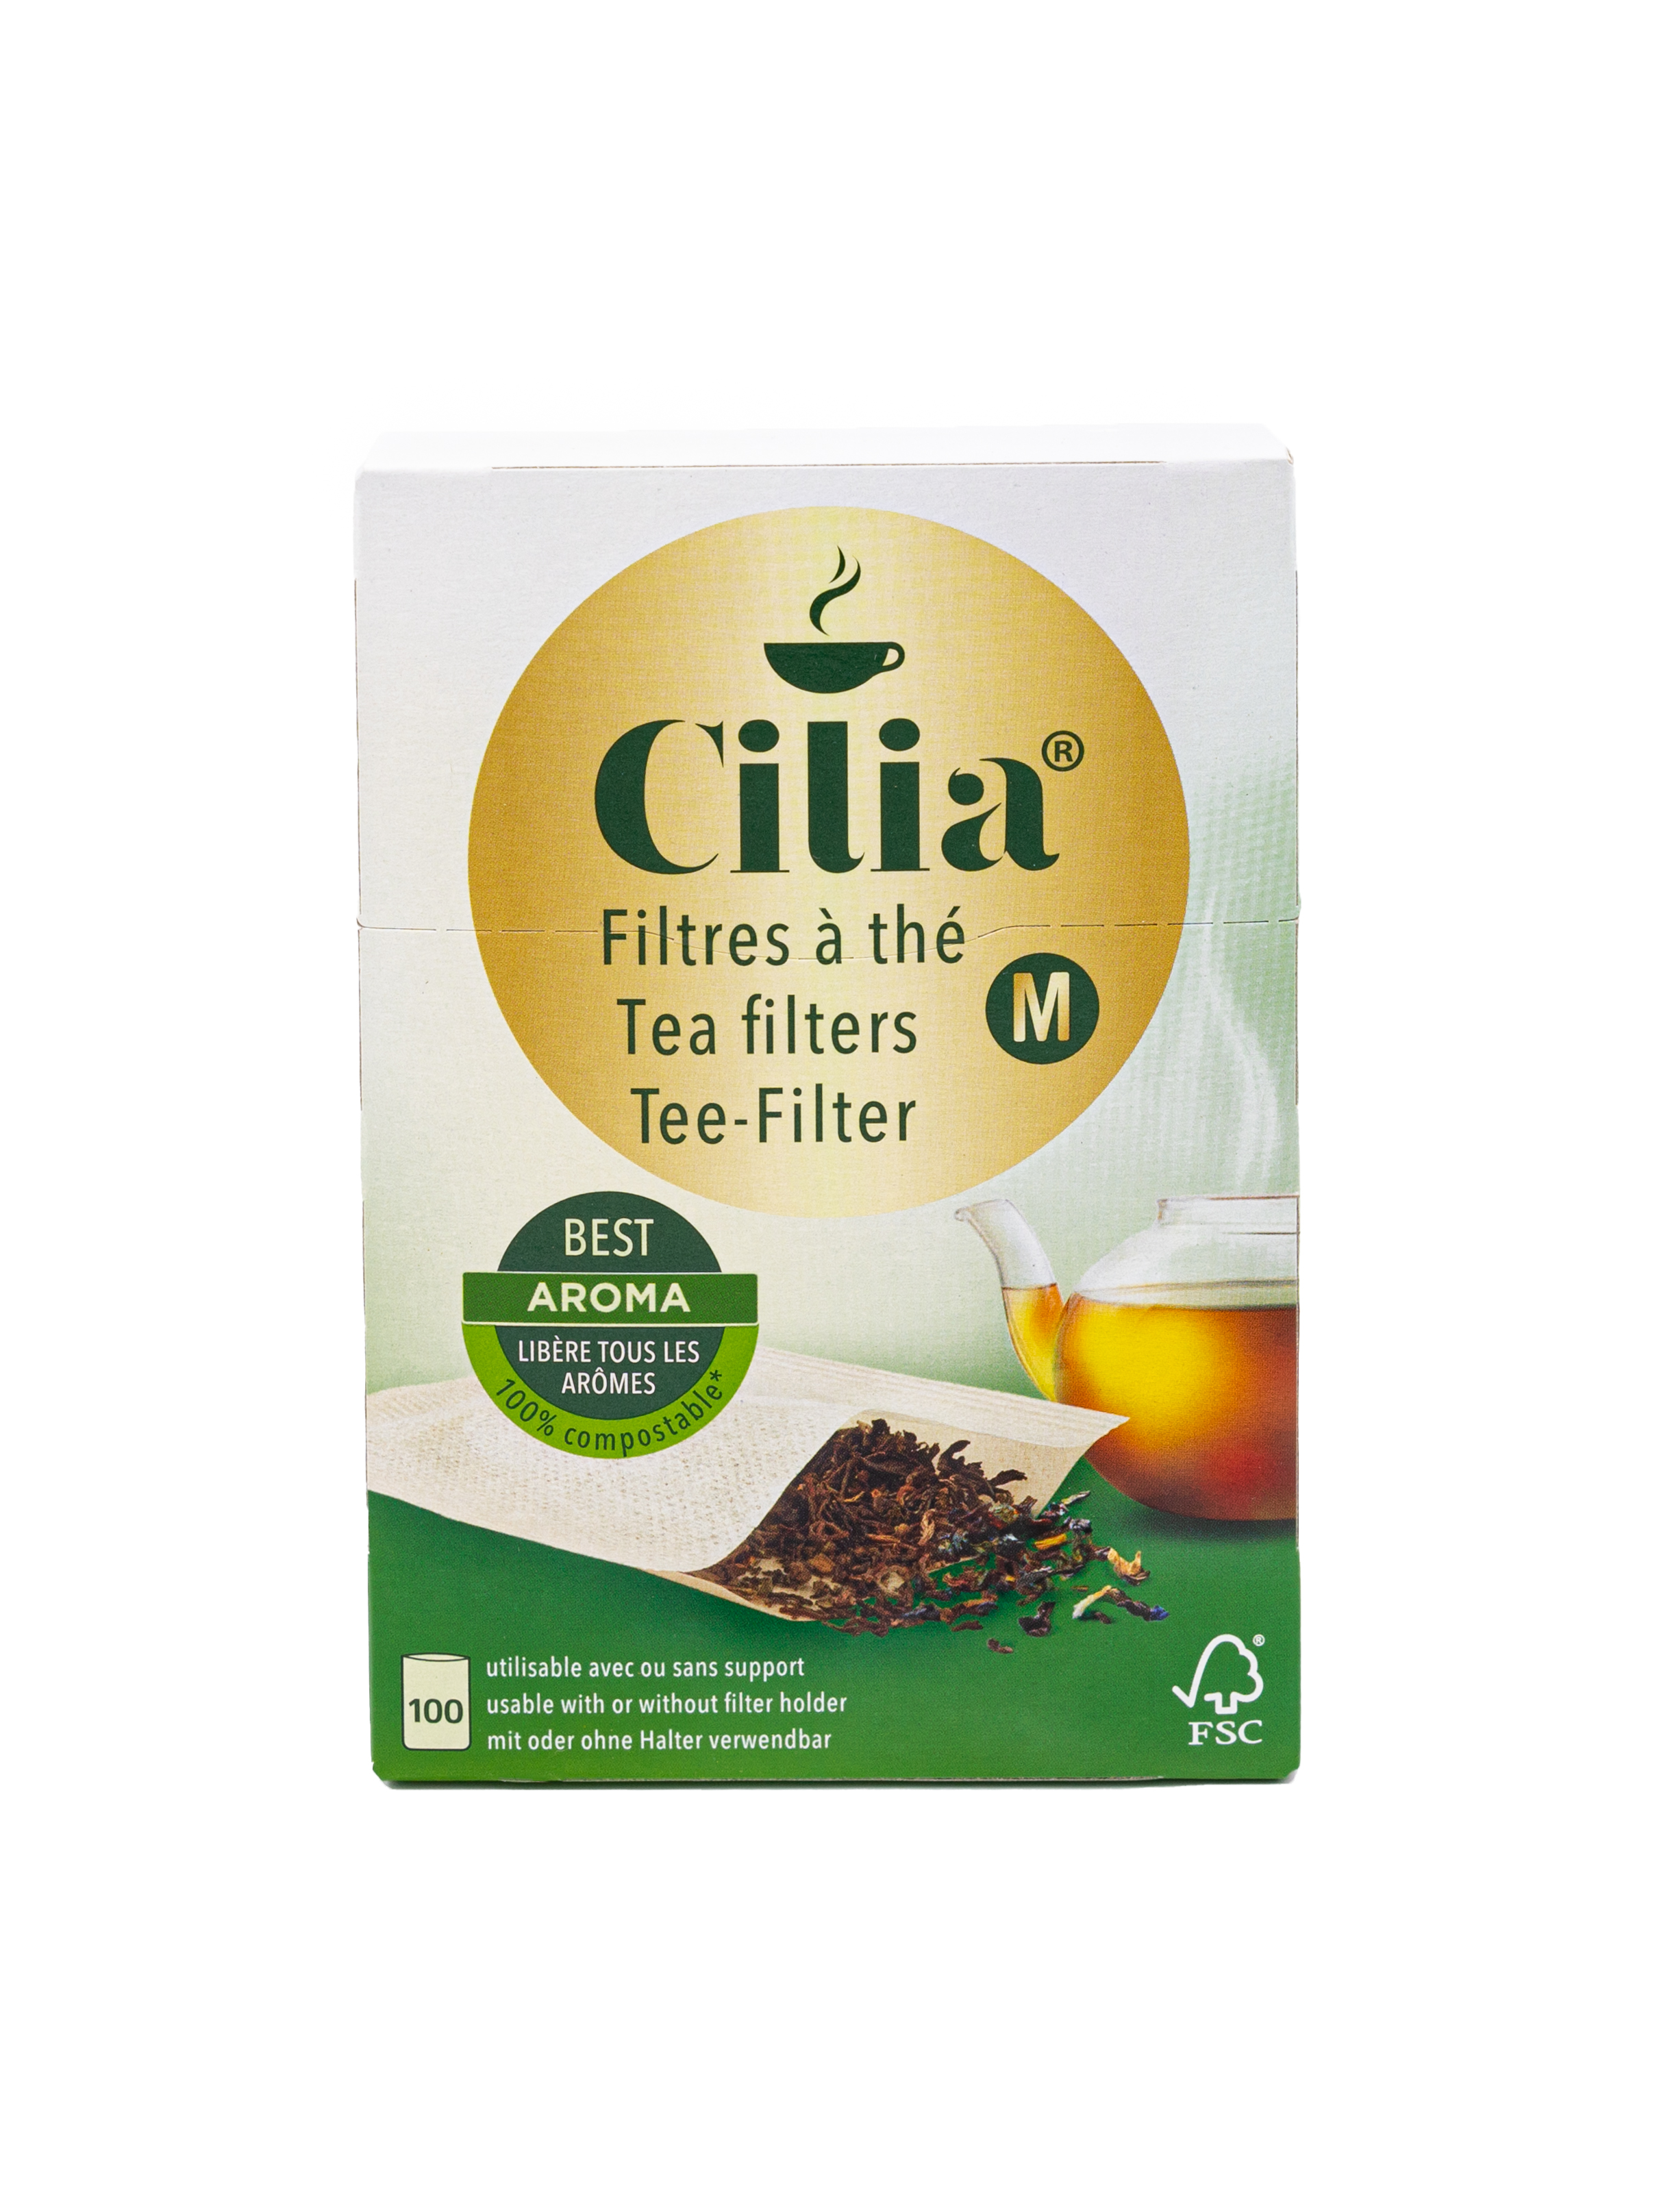 Cilia® Teefilter M: Der vielseitige Teefilter für das volle Tee-Aroma